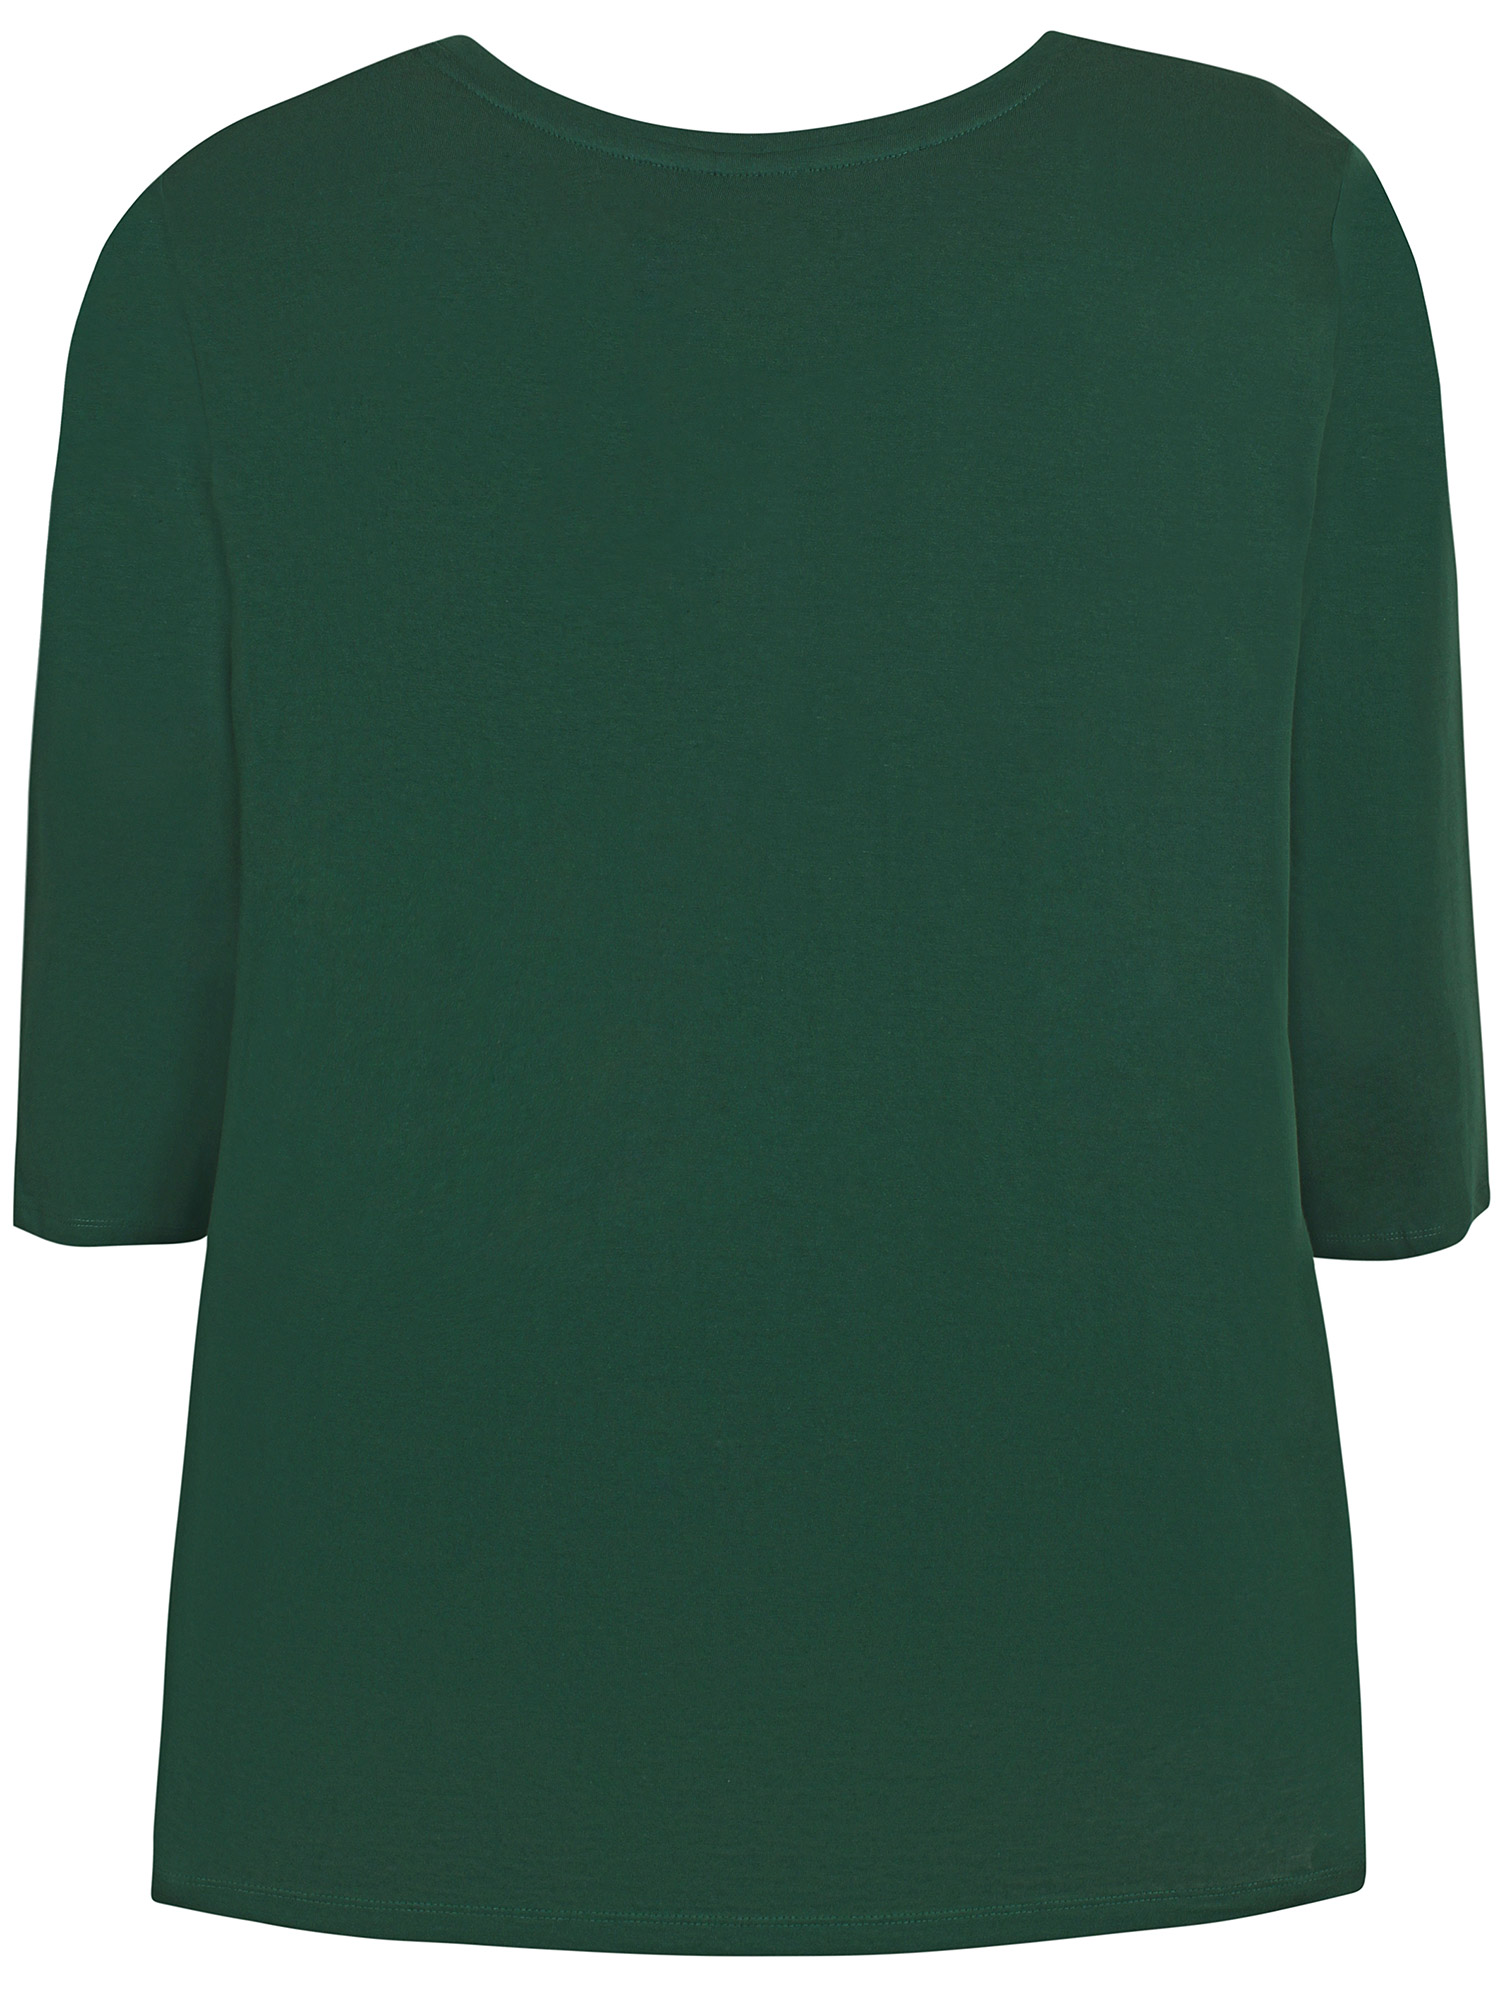  ALEXIE - grønn t-skjorte med 3/4 ermer i 100% øko. bomull  fra Zhenzi